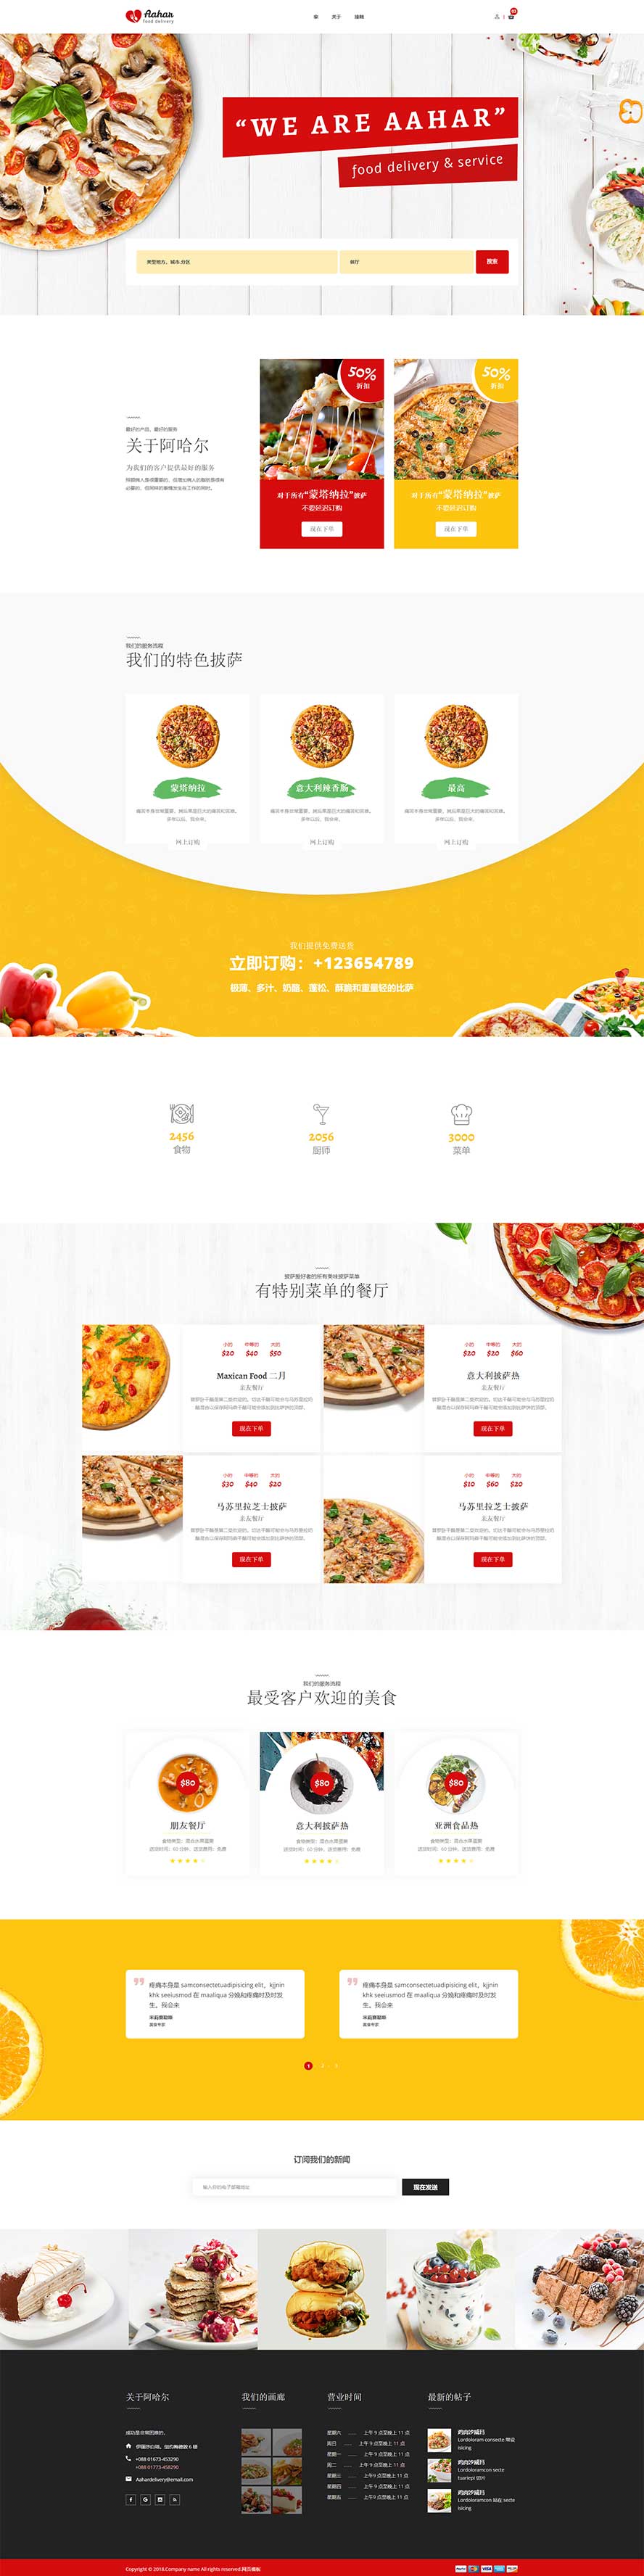 餐厅网站模板,美食网站模板,披萨网站模板